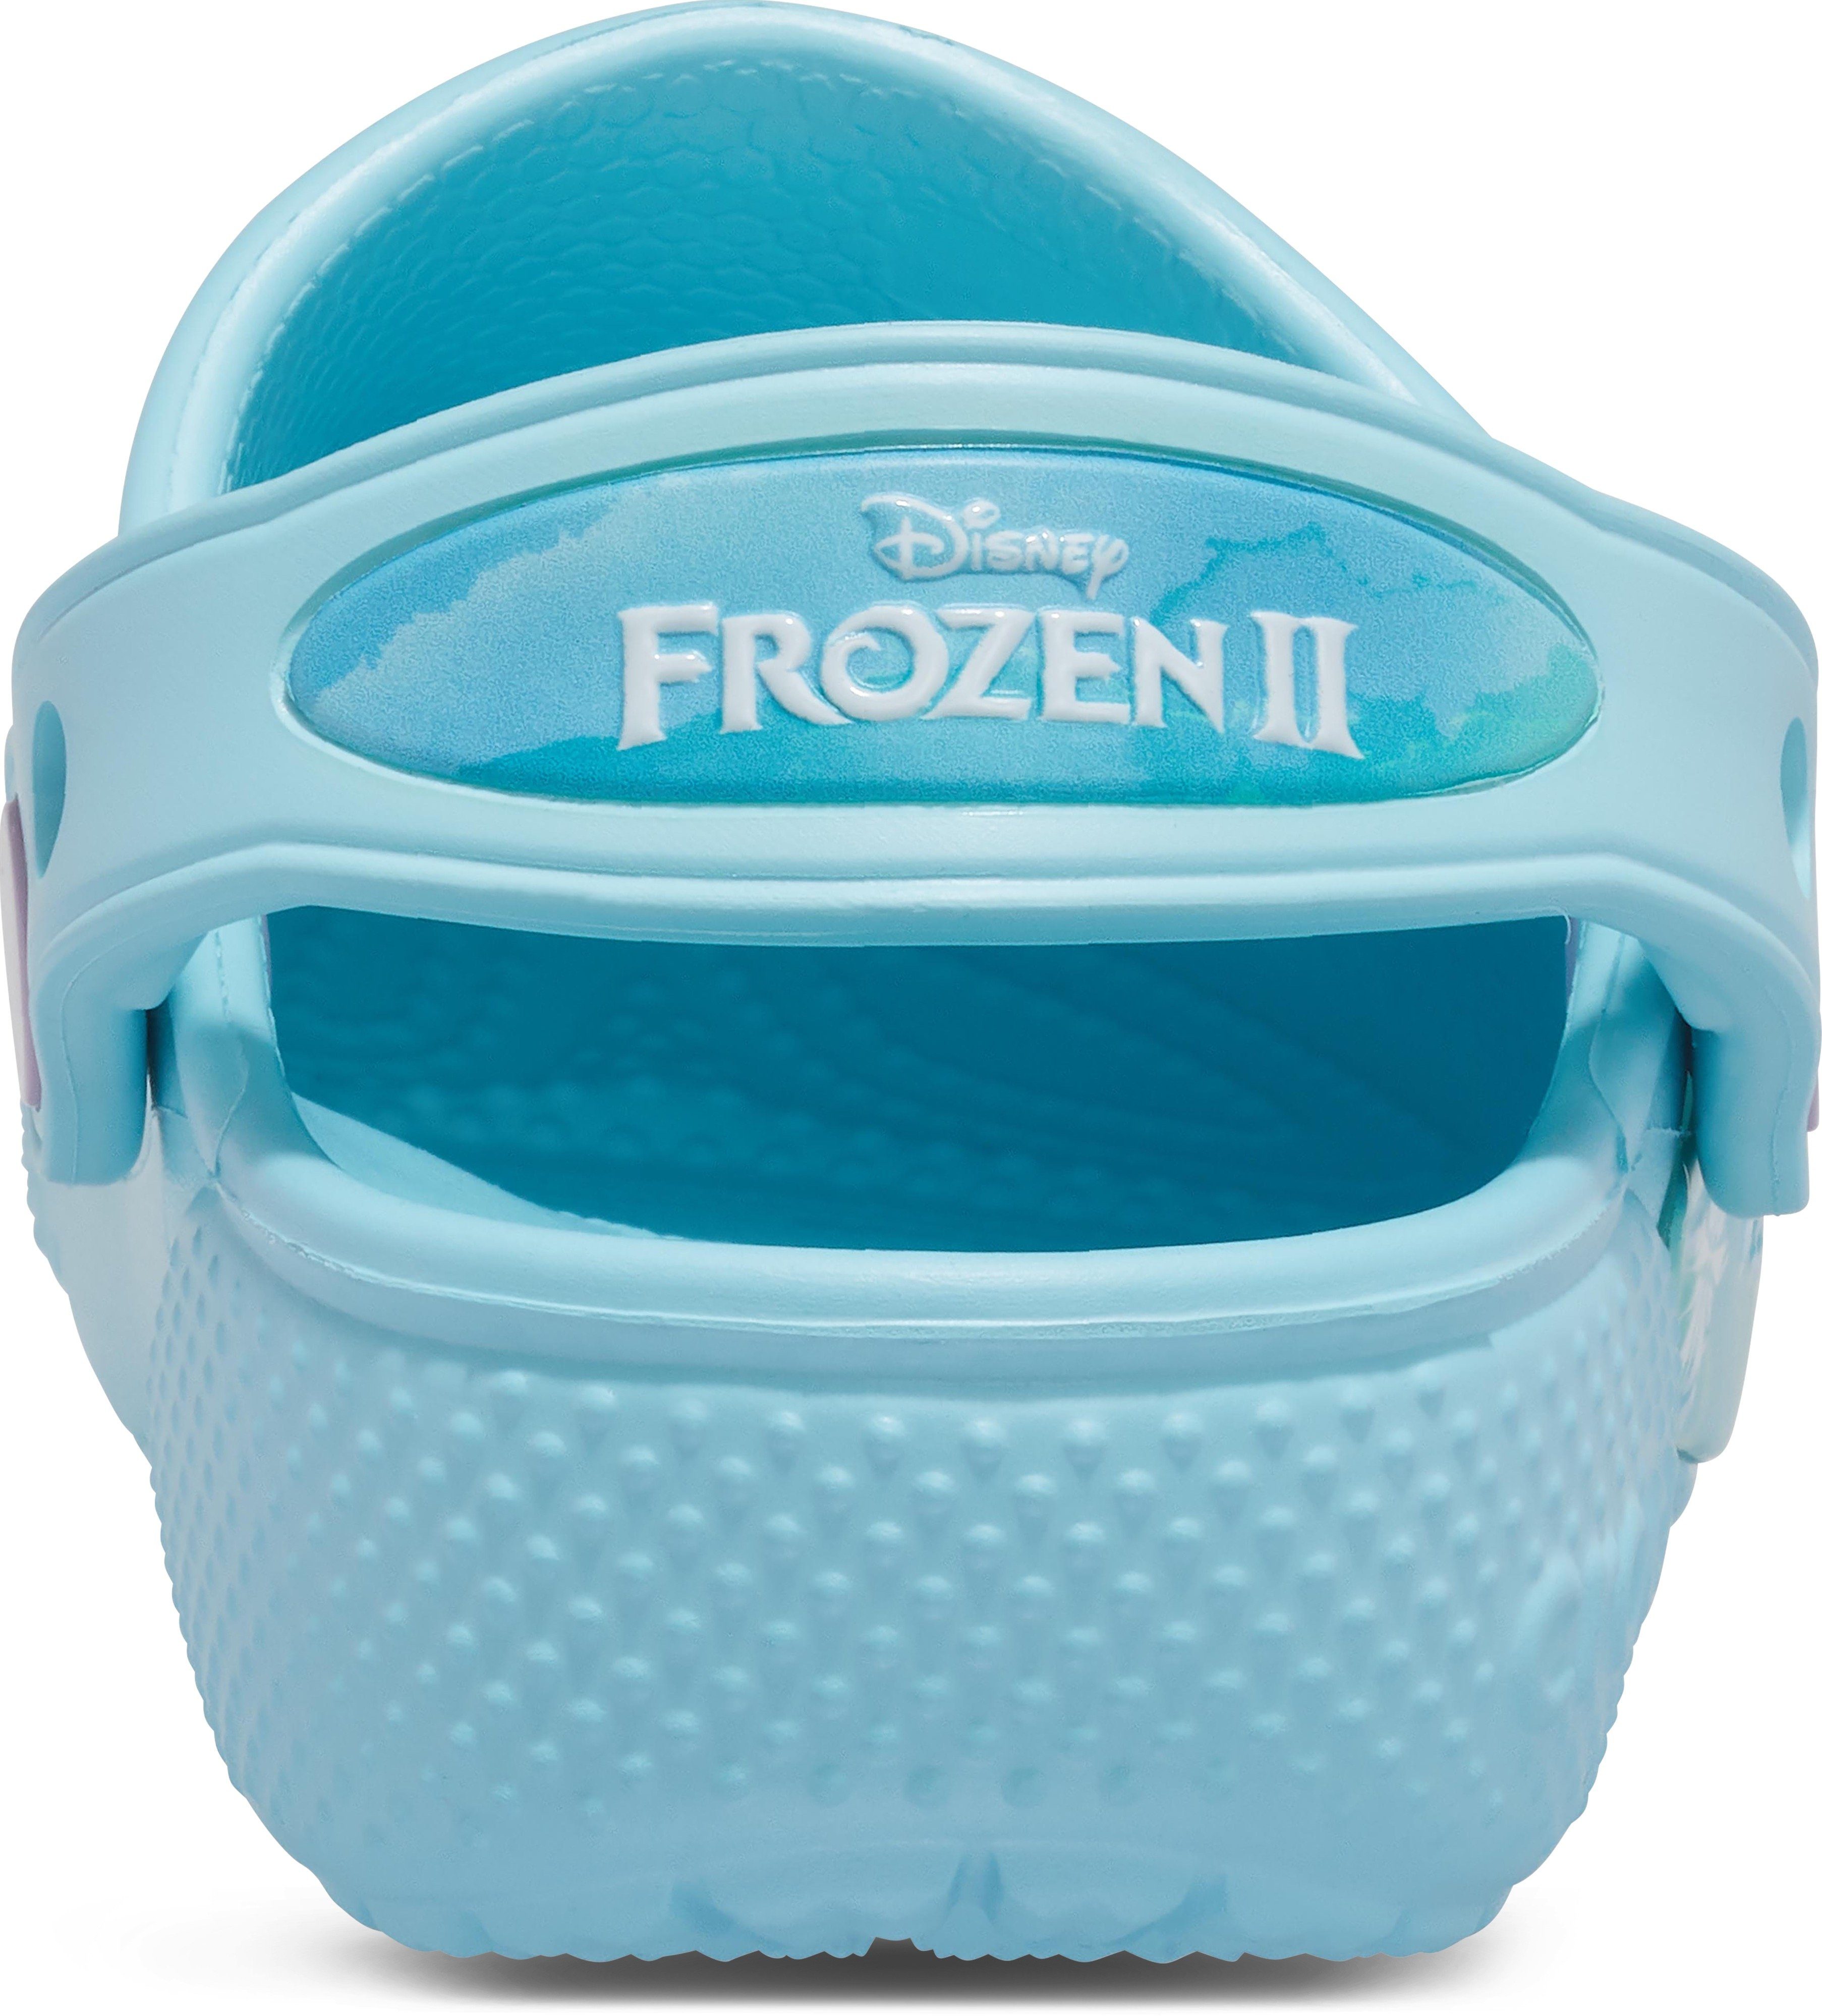 Crocs FL Disney Frozen K mit Motiv 2 Anna" Clog "Elsa Clog aus Disney die Eiskönigin und